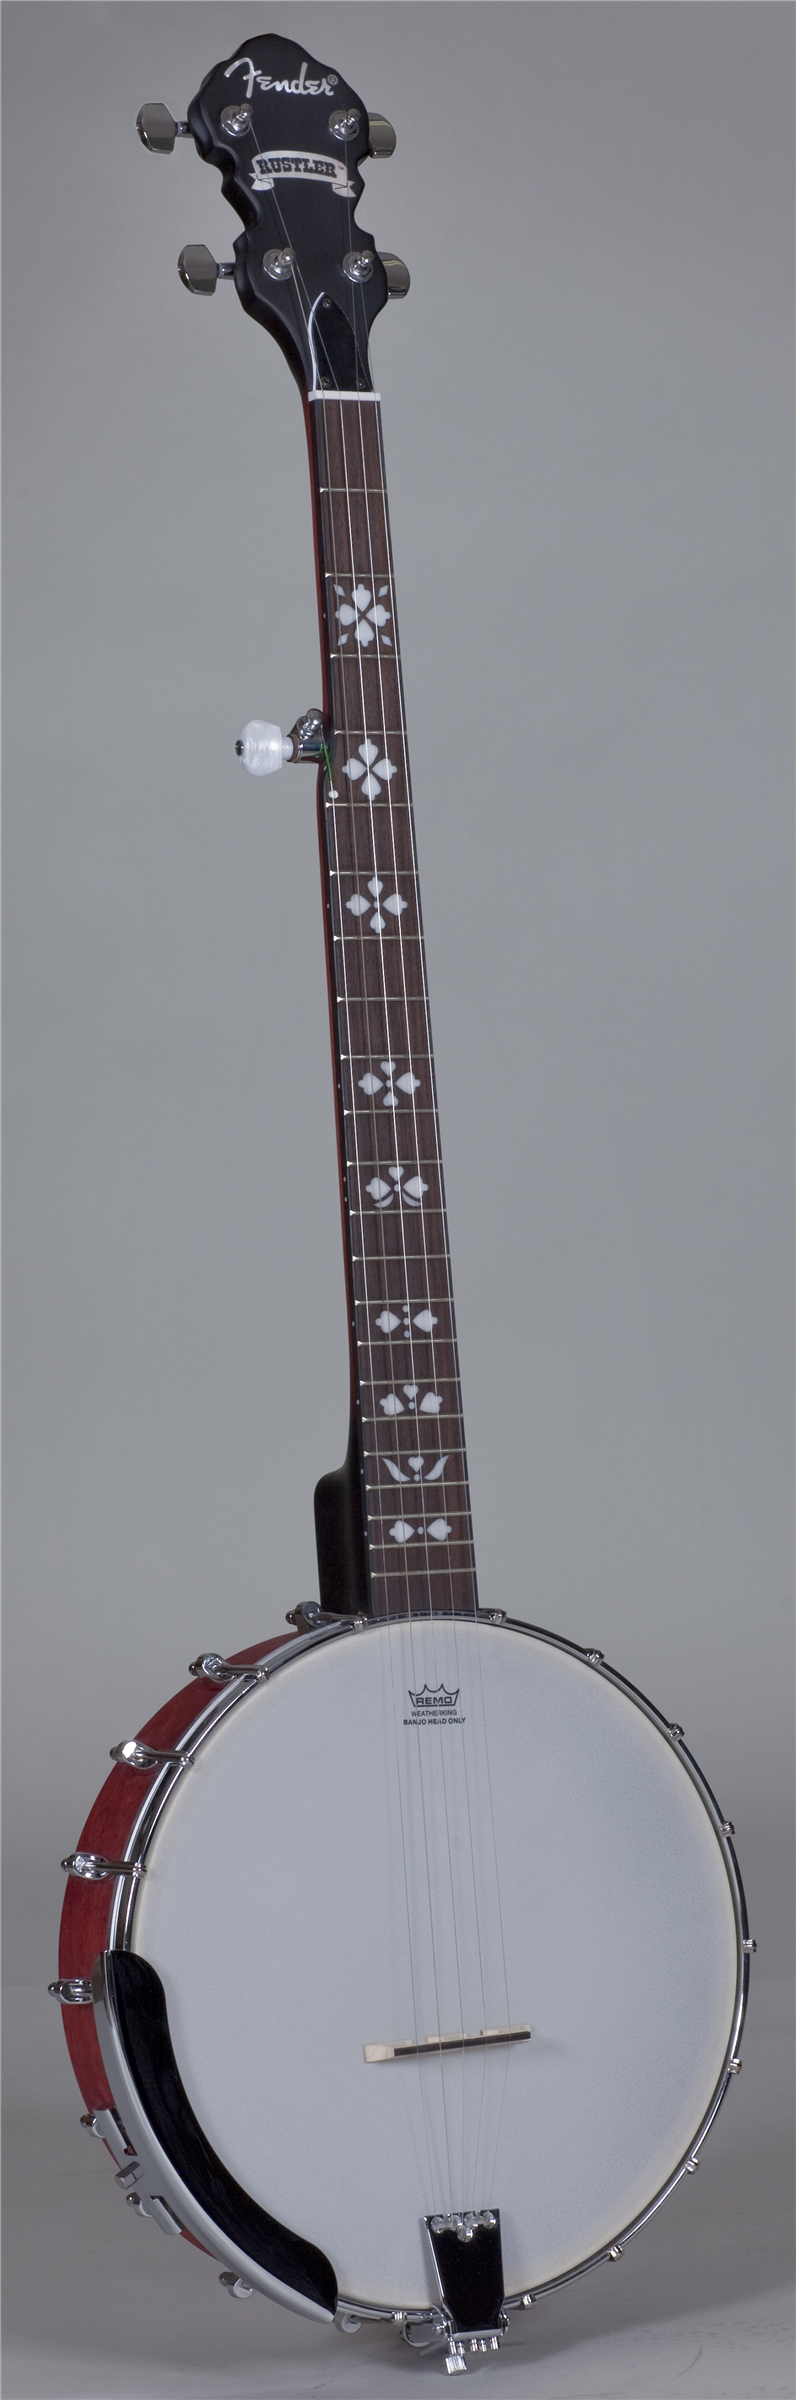 Fender Rustler 5-String Open Back Banjo 0955617021